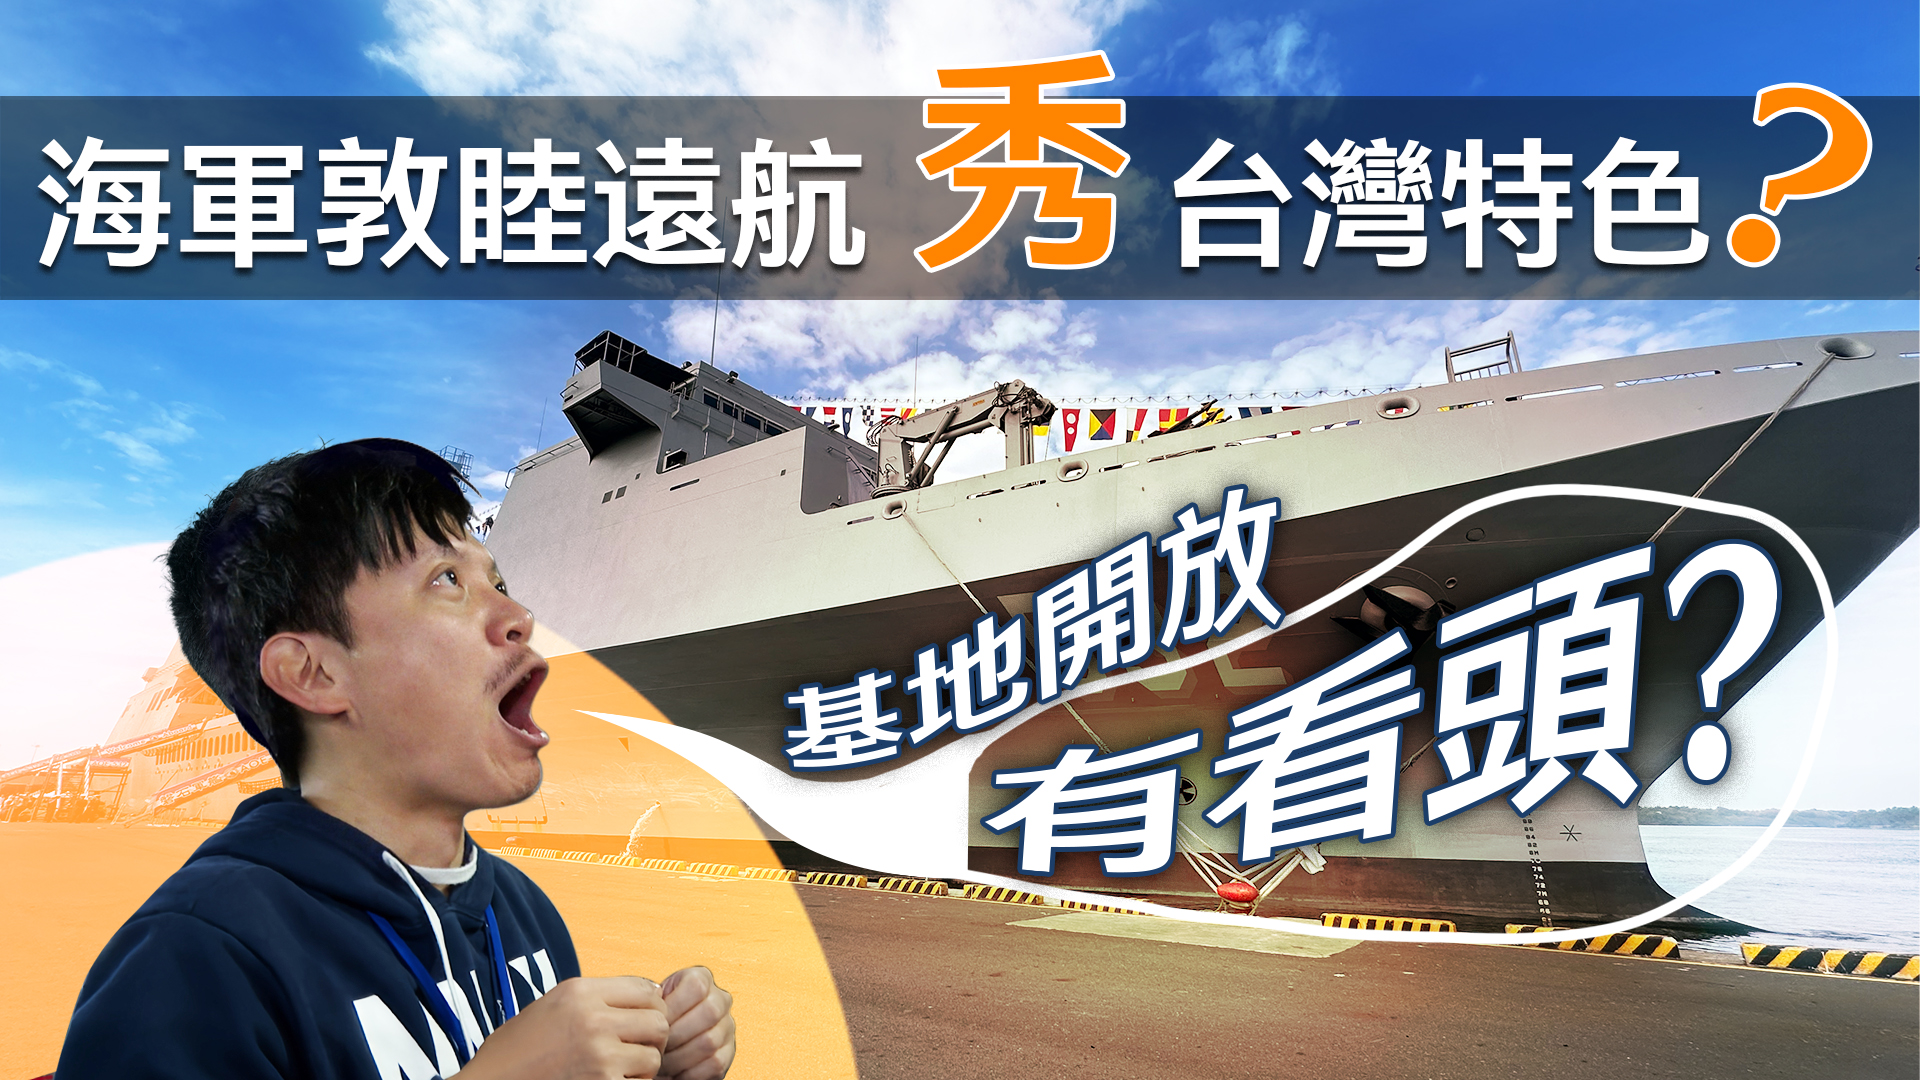 【军情+】海军敦睦远航秀台湾特色？基地开放有看头？